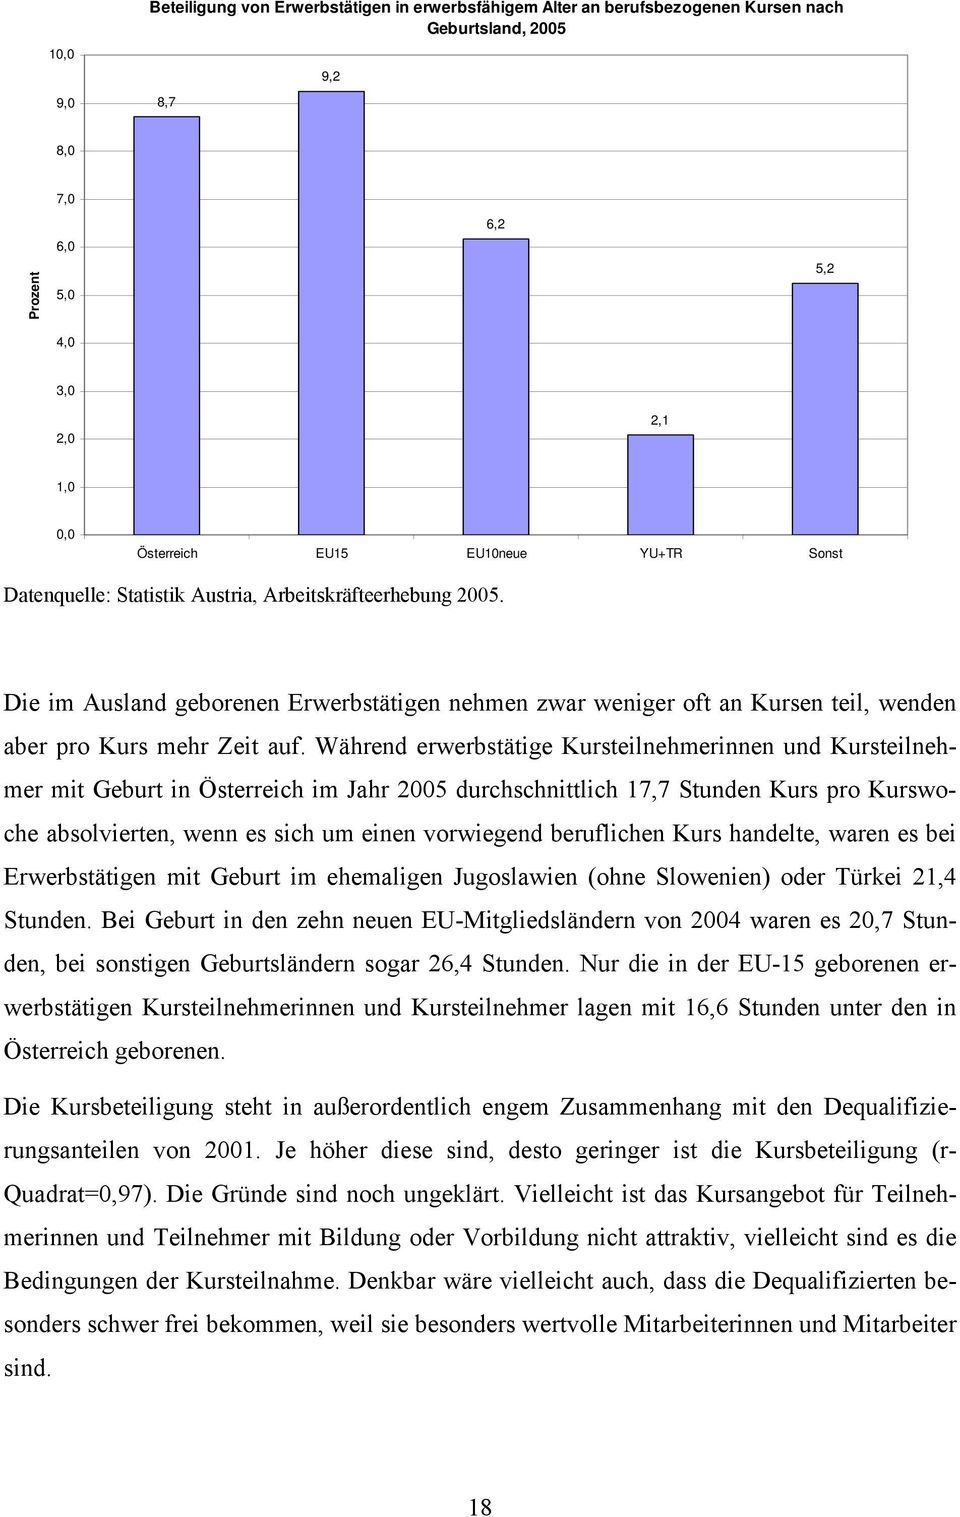 Während erwerbstätige Kursteilnehmerinnen und Kursteilnehmer mit Geburt in Österreich im Jahr 2005 durchschnittlich 17,7 Stunden Kurs pro Kurswoche absolvierten, wenn es sich um einen vorwiegend